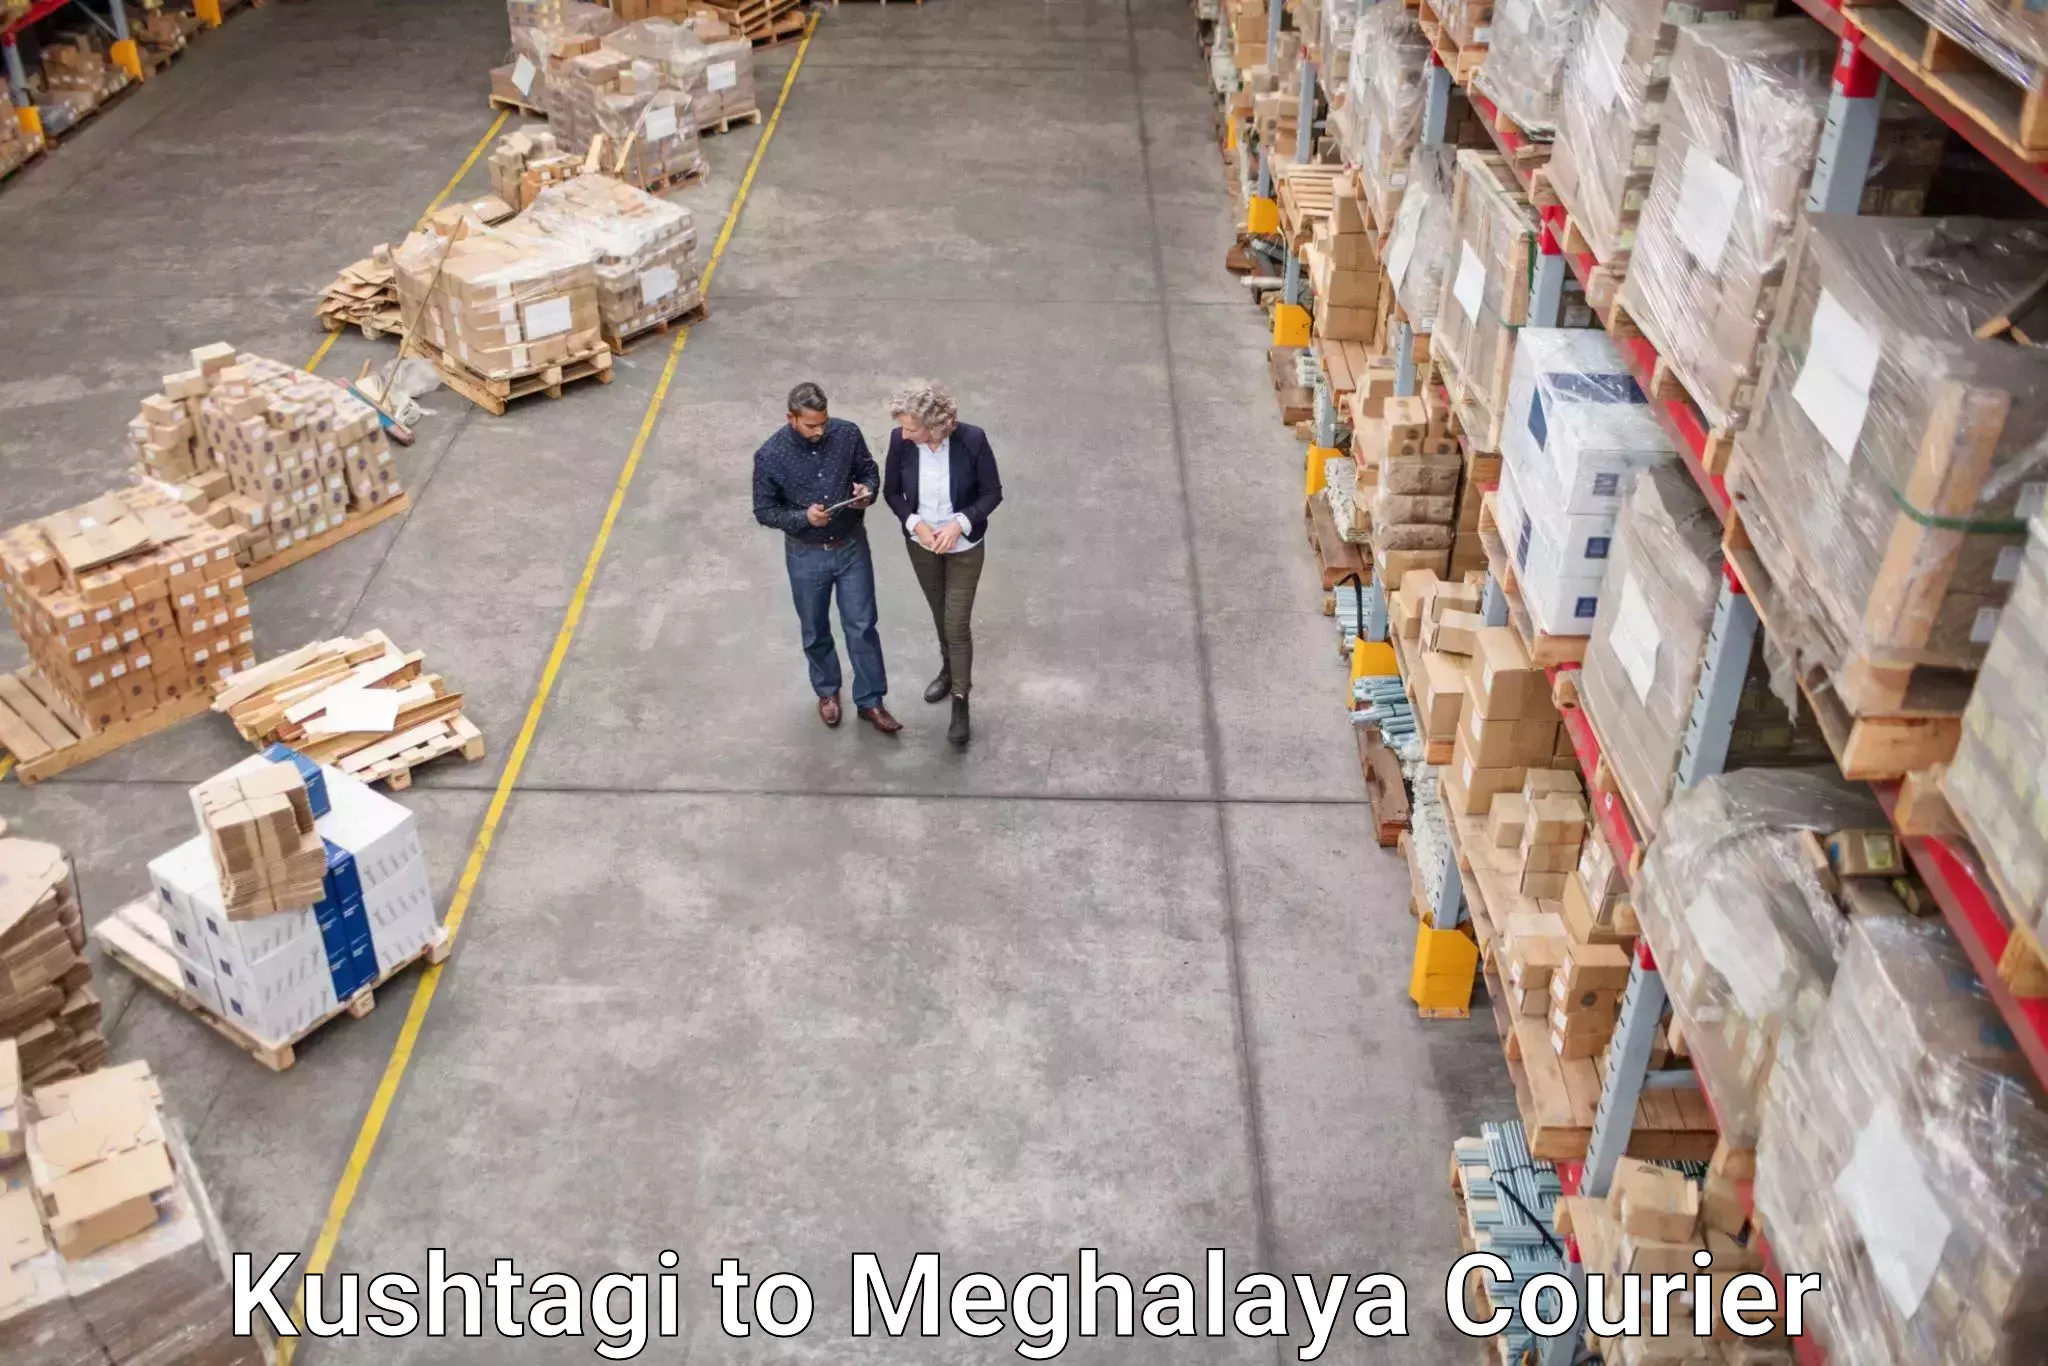 Global logistics network Kushtagi to Shillong